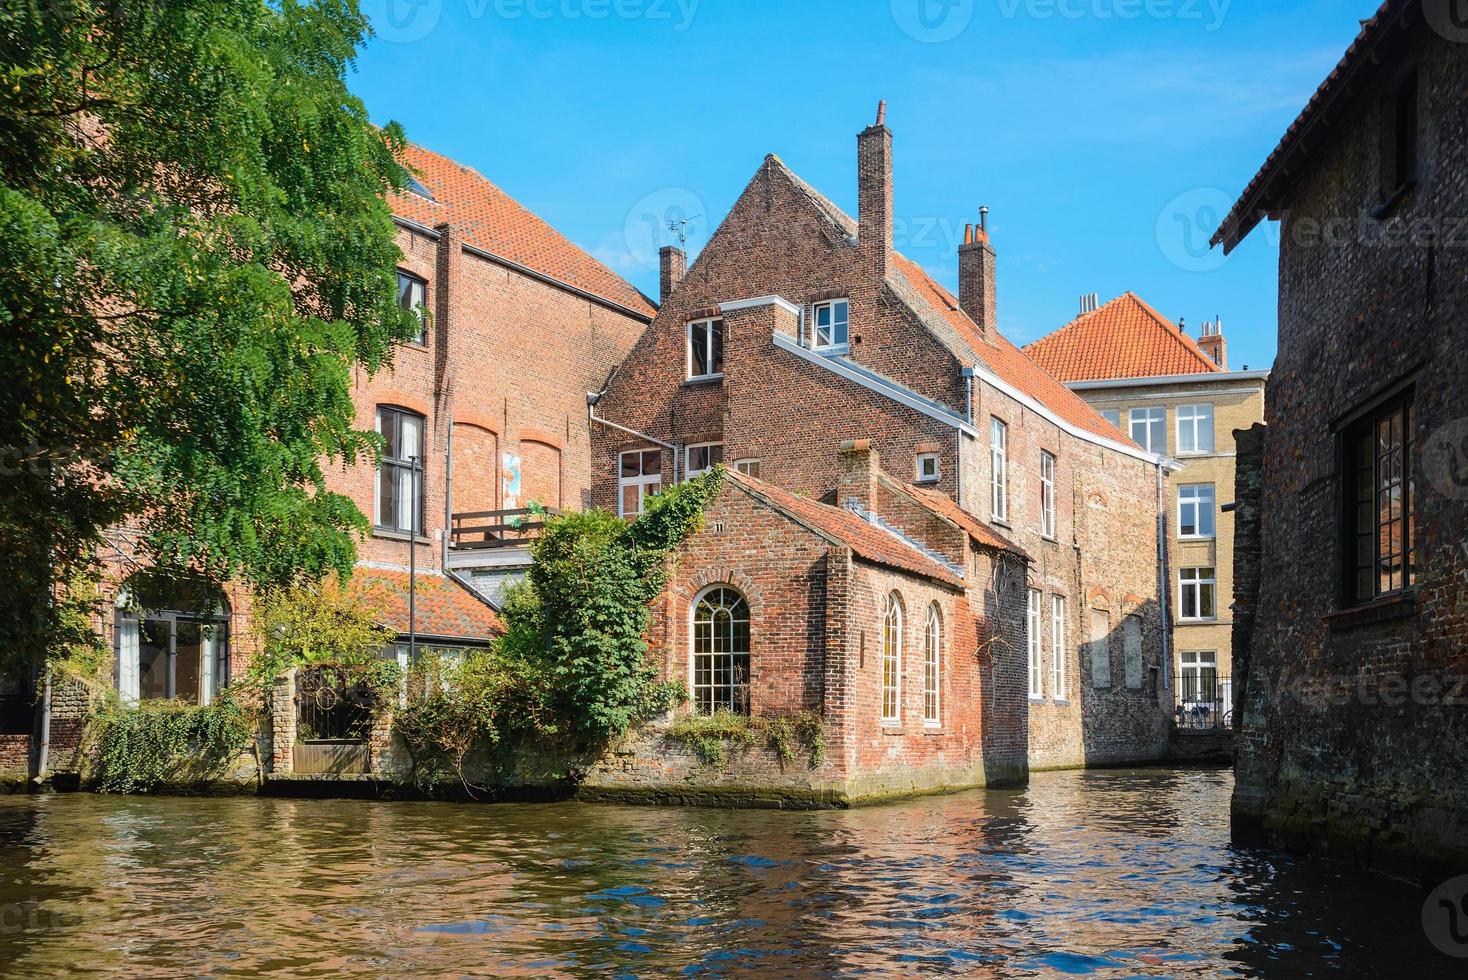 vue du canal aux vieilles maisons de marchands de briques à bruges, belgique. ancienne vue sur la ville d'europe médiévale. photo